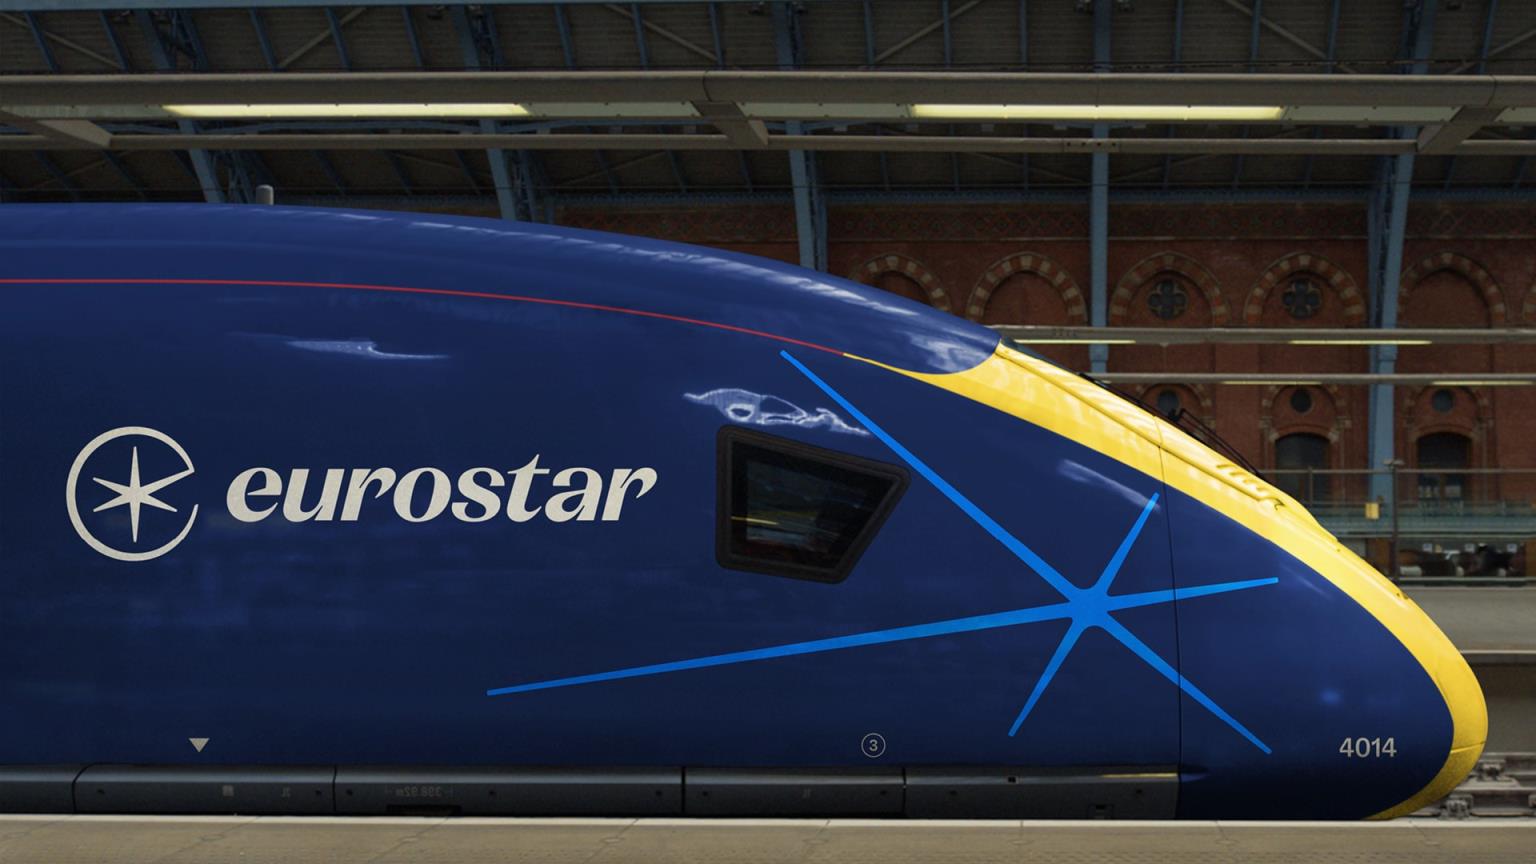 Eurostar Group